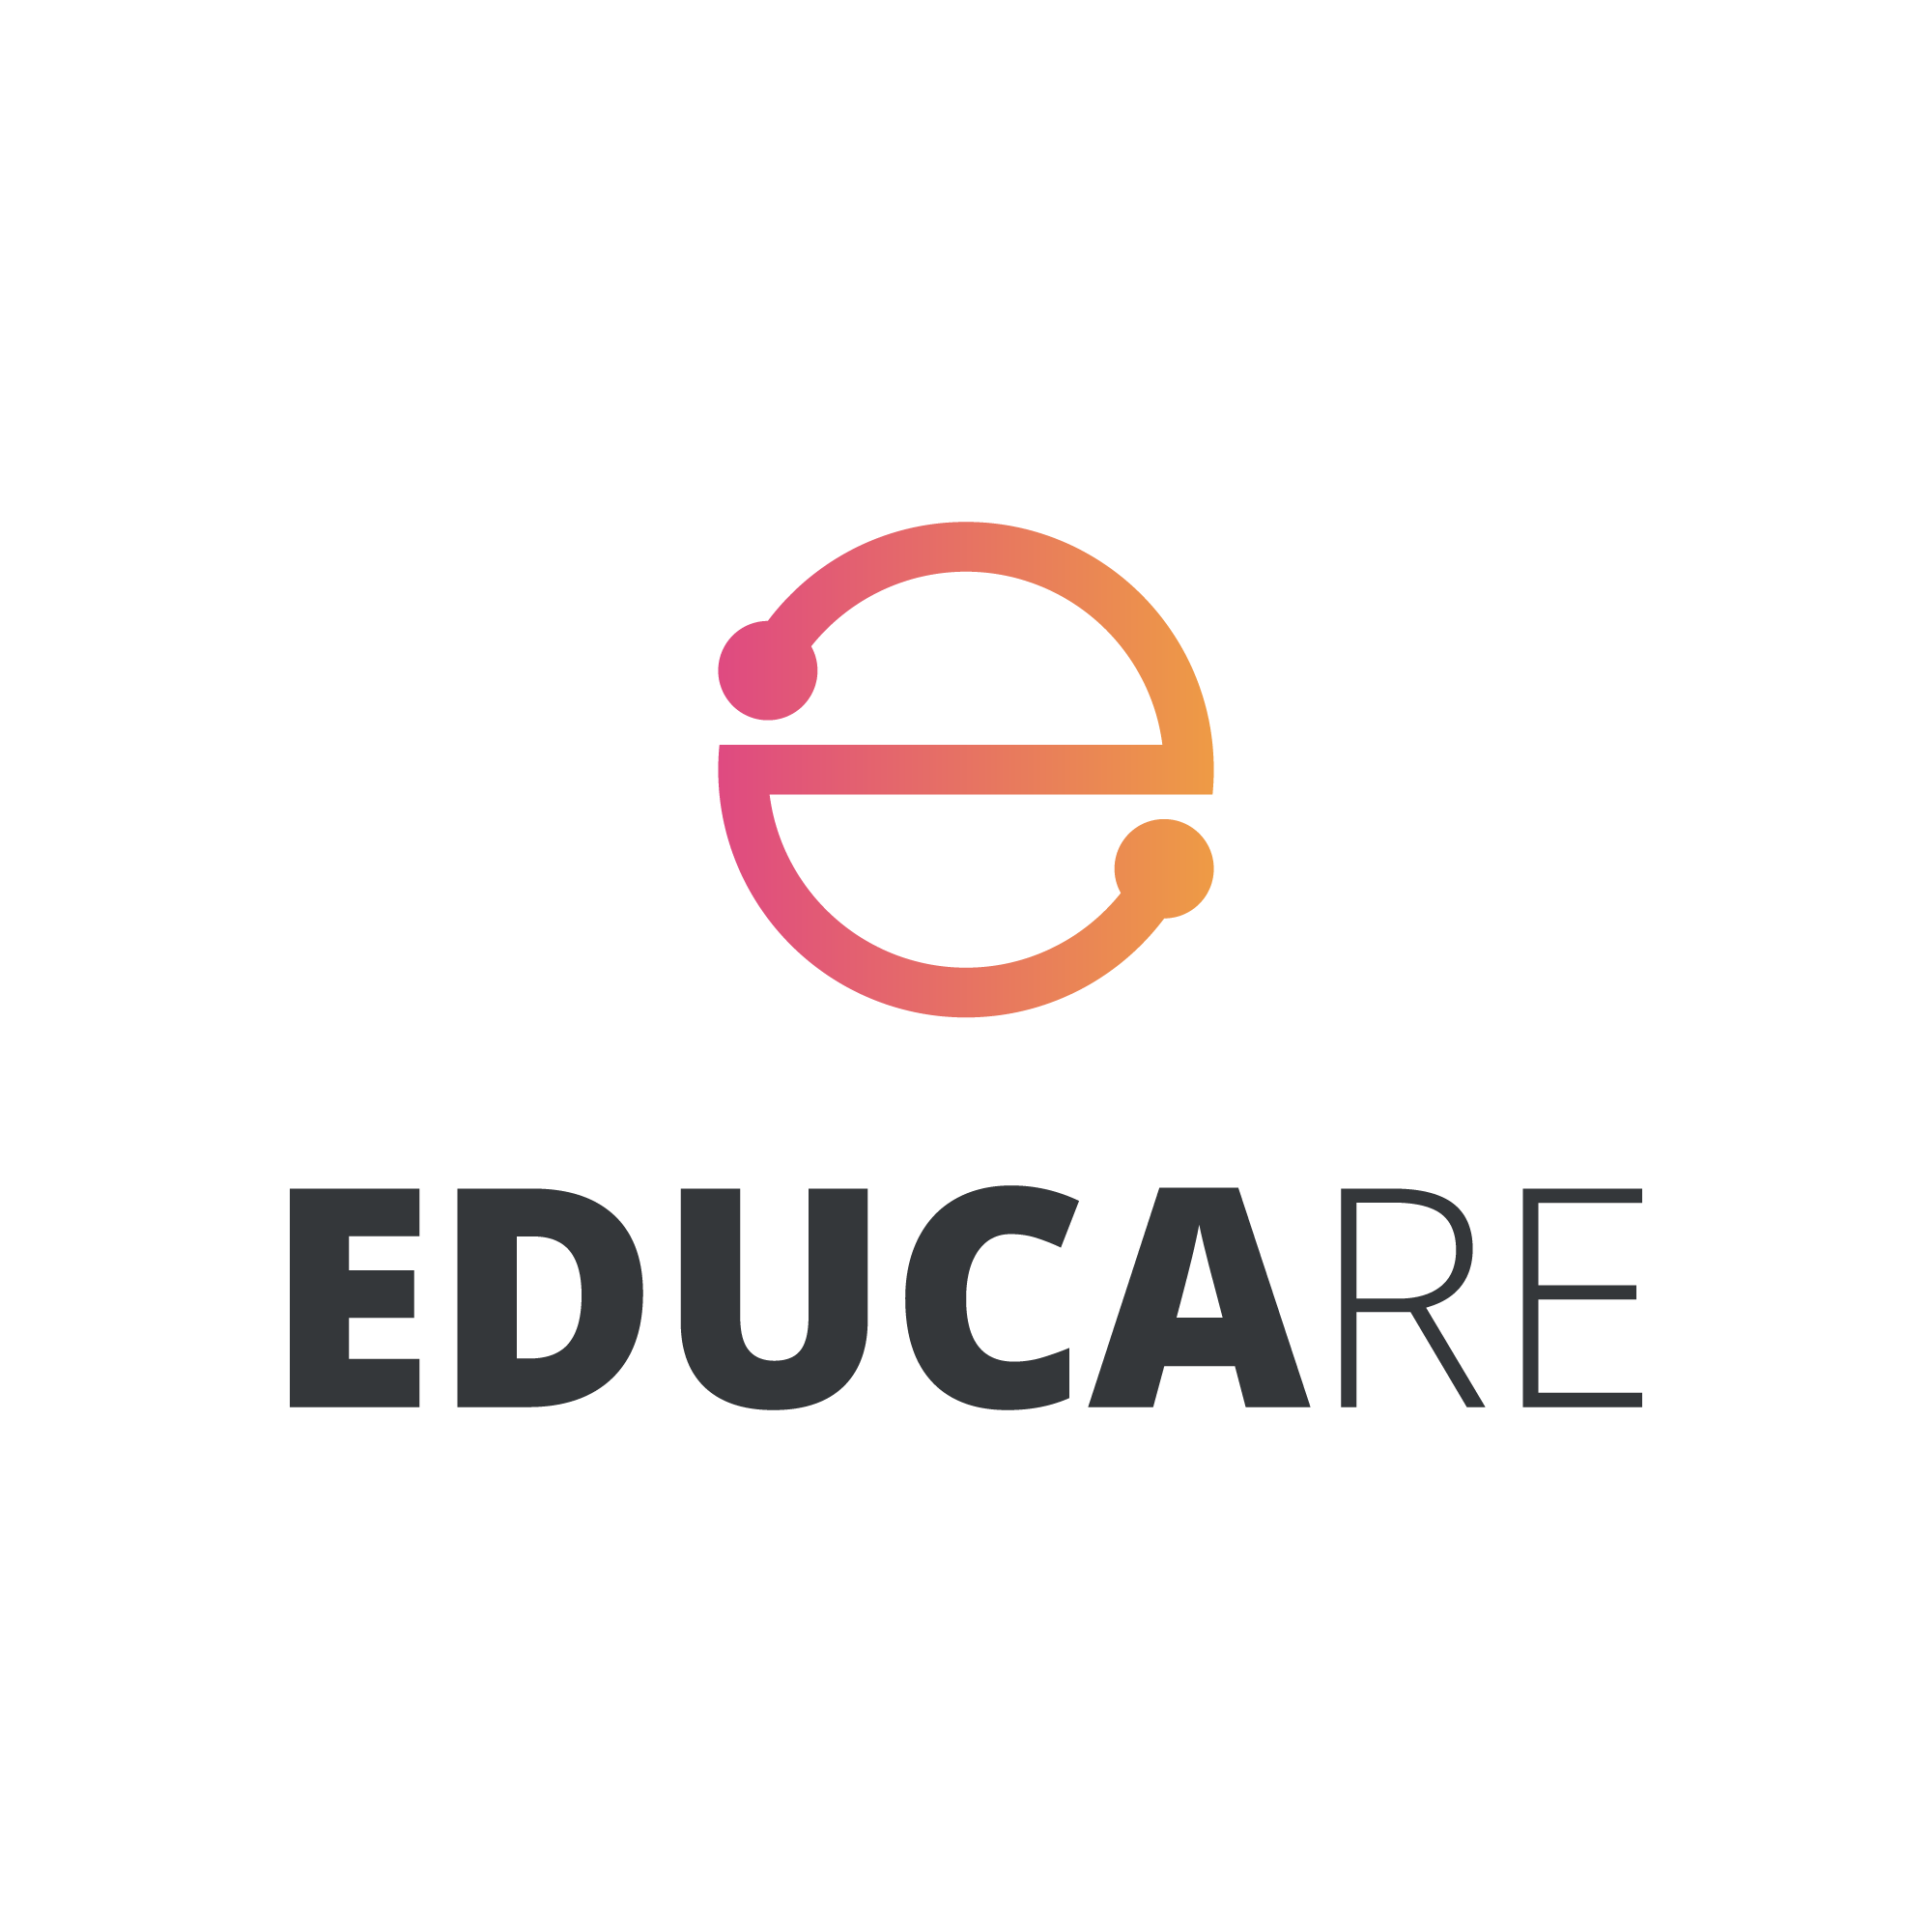 Educare: plataforma da Fiocruz para recursos educacionais abertos será lançada no dia 23/9